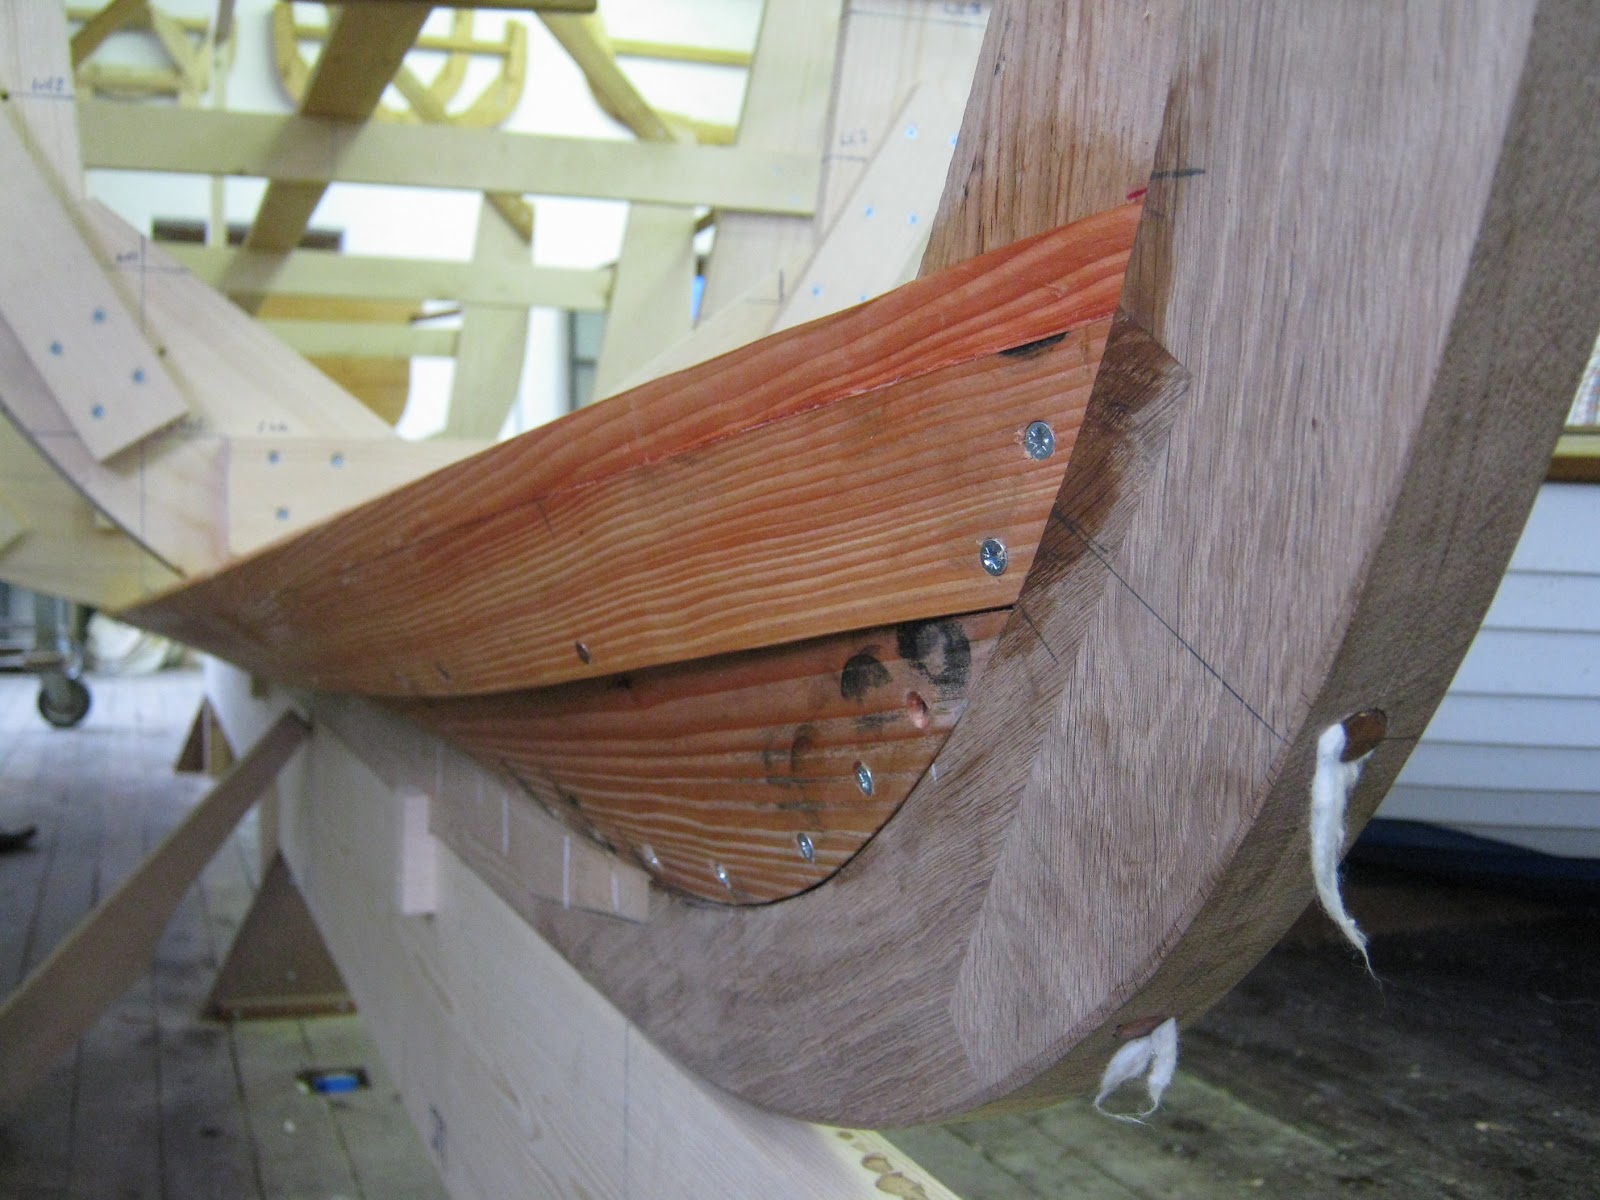  wooden boat building plans lapstrake boat plans wooden boat building